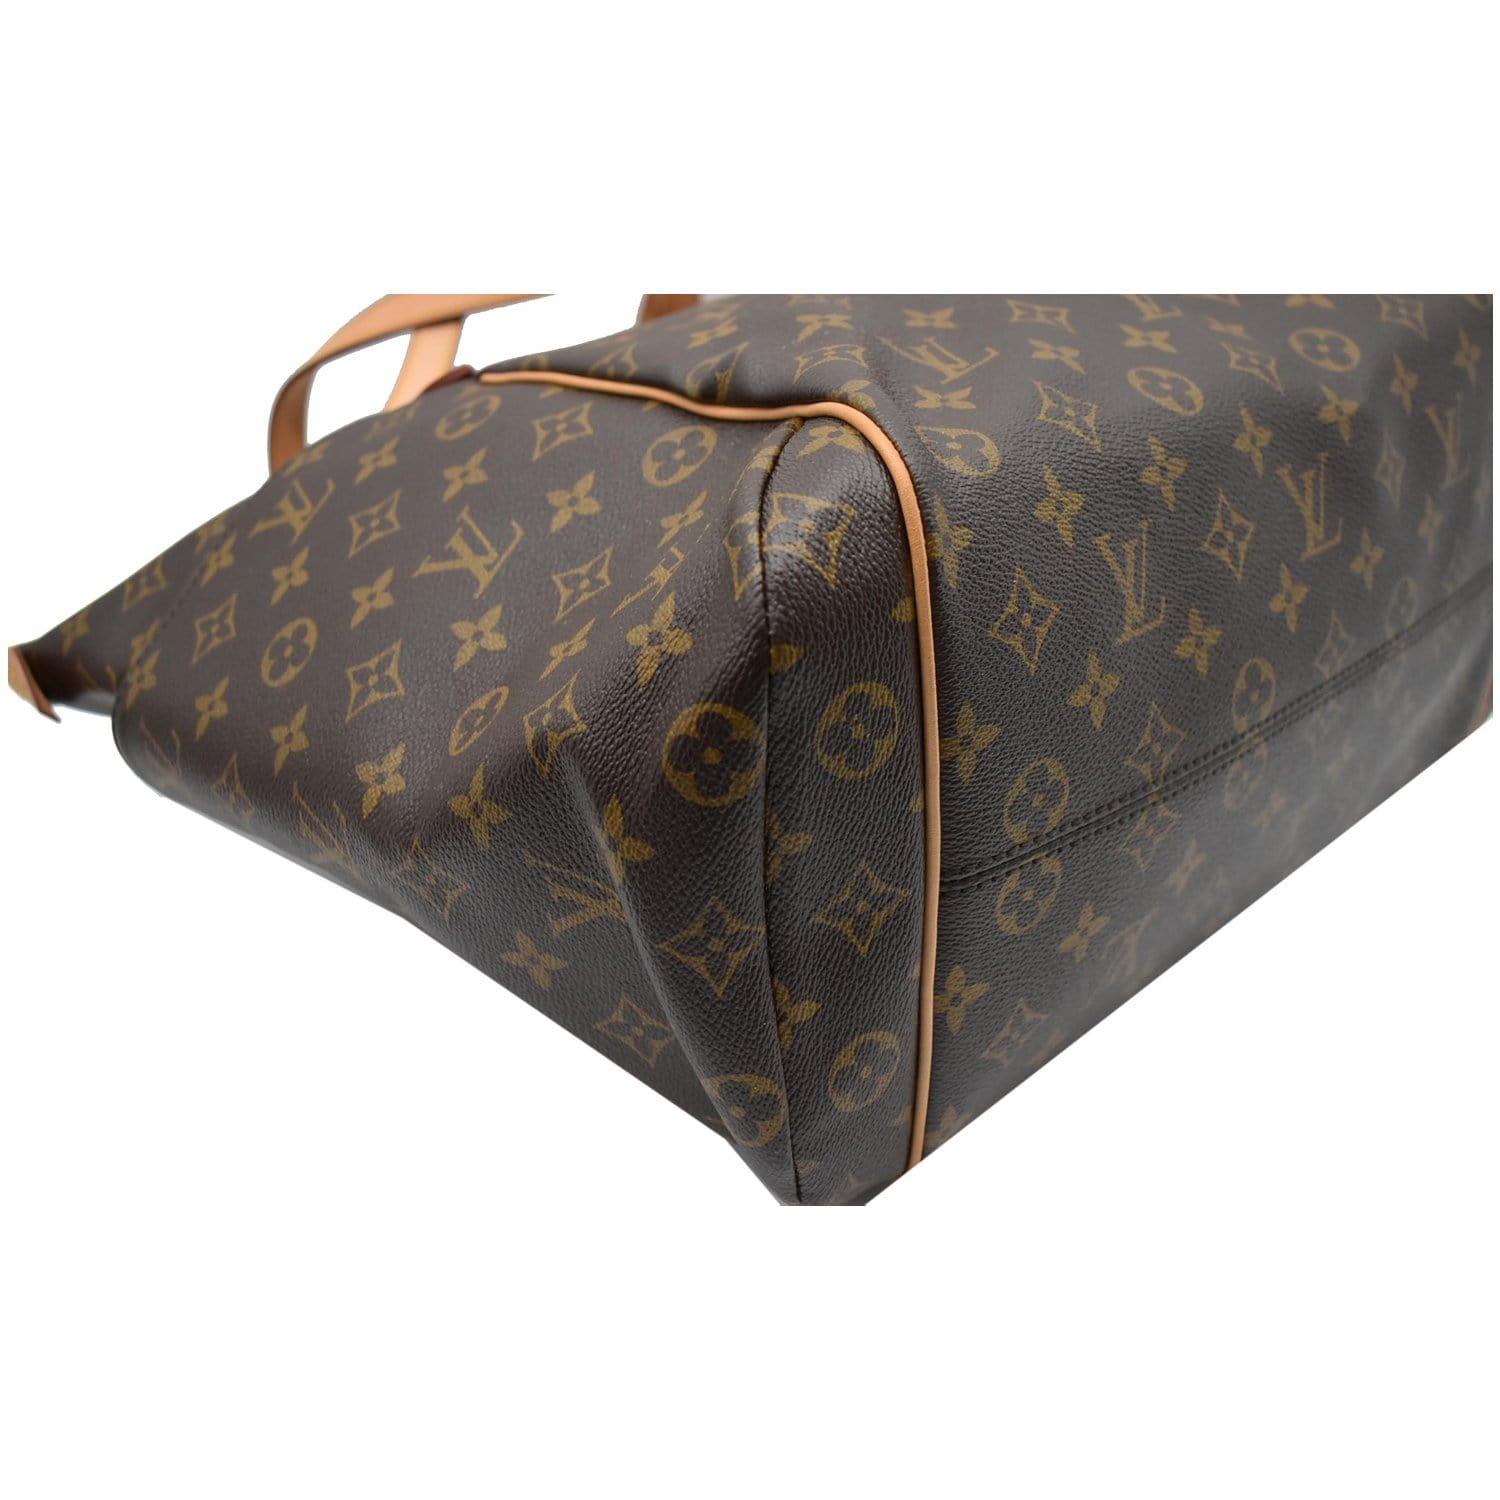 Louis Vuitton M55210 Monogram Griet Shoulder Tote Bag Brown